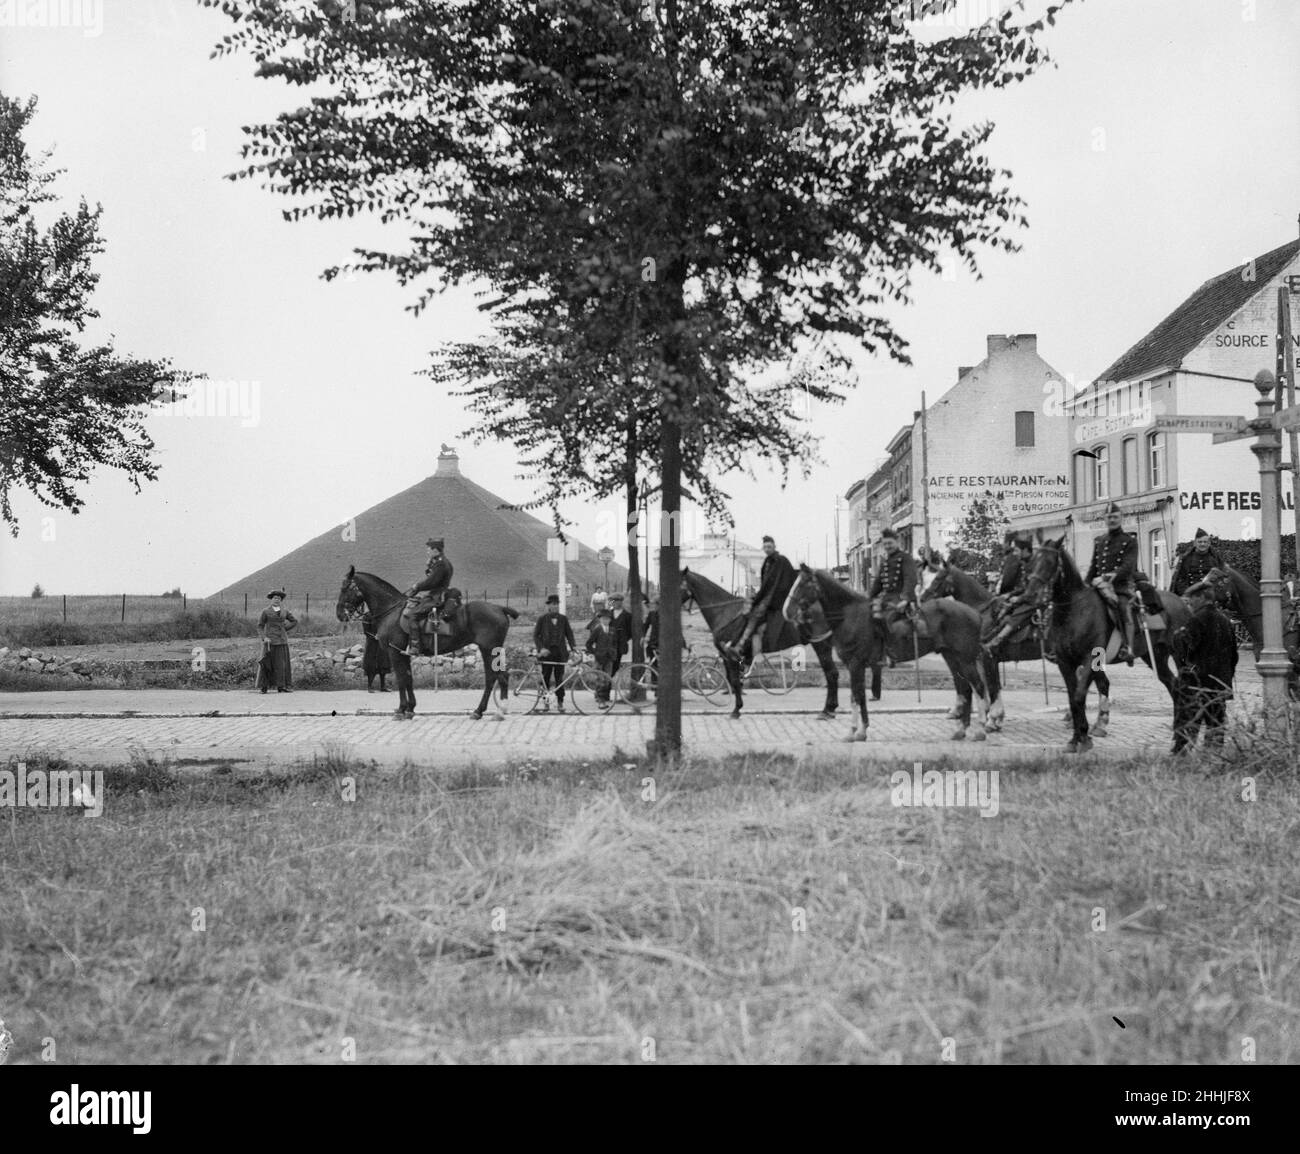 Belgische Kavallerie, die feindliche Positionen rekonnosieren, fanden sich auf dem historischen Schlachtfeld von Waterloo in der Nähe des berühmten Monuments wieder, das im Hintergrund zu sehen ist. Circa August 18th 1914 Stockfoto